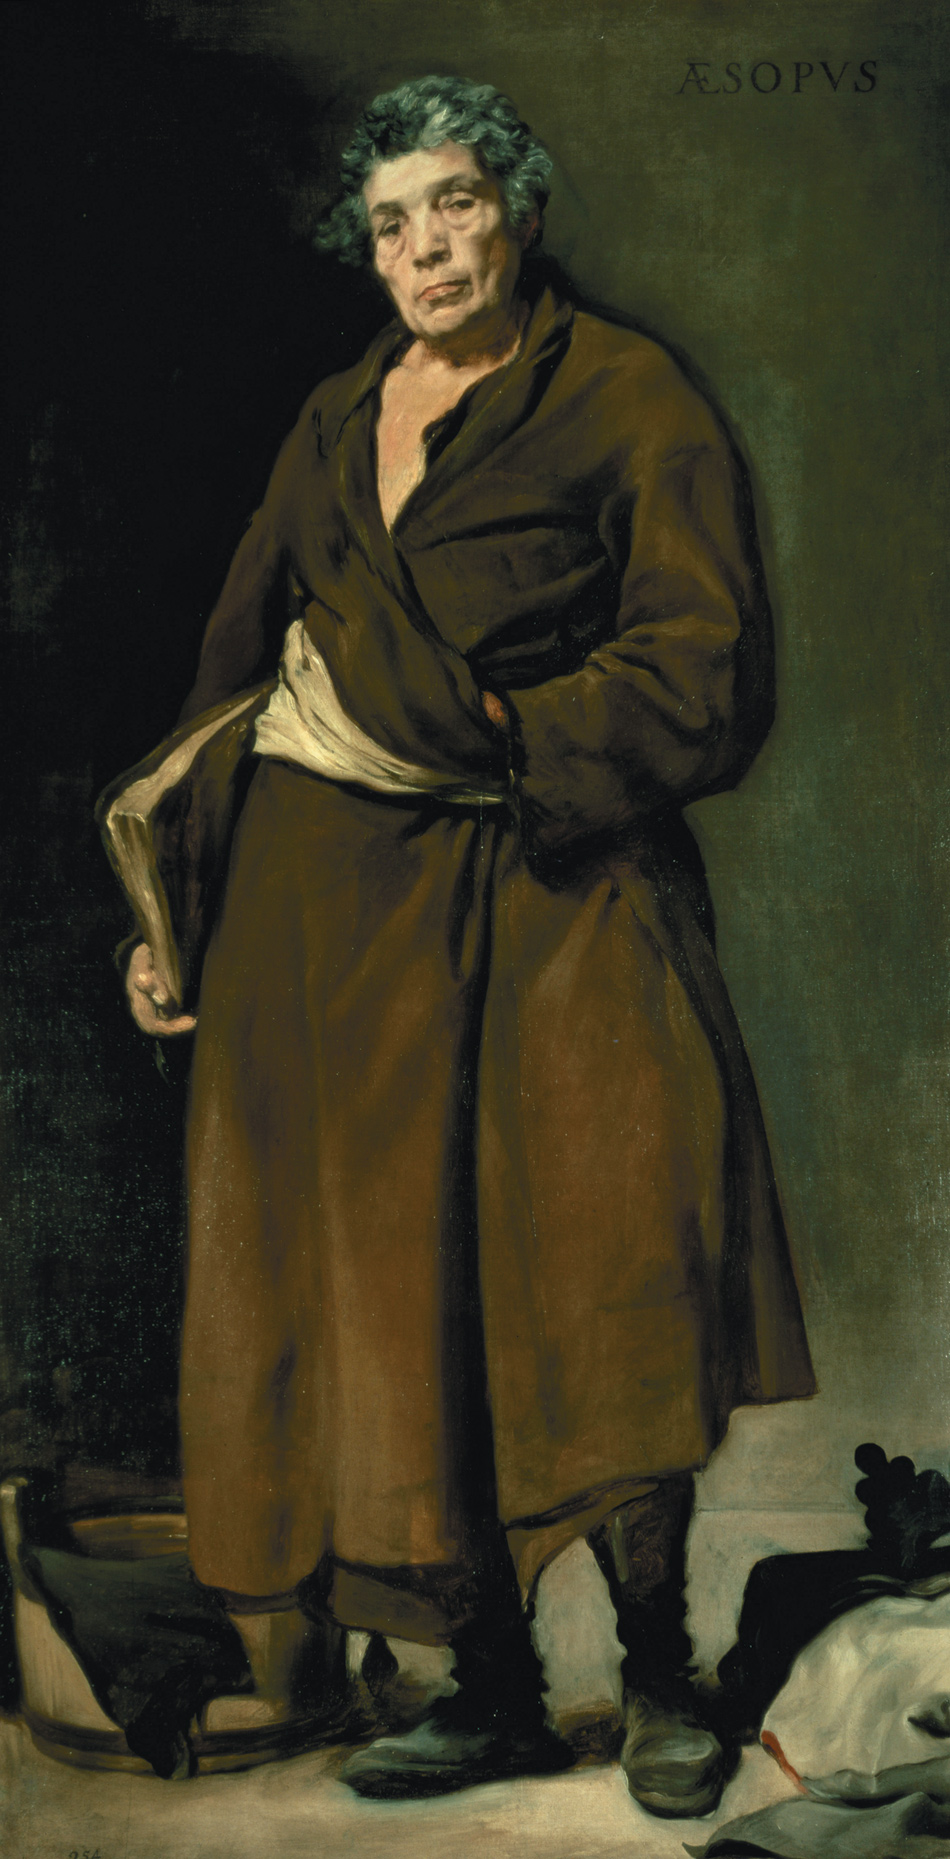 Diego Velázquez: Aesop, 1640
